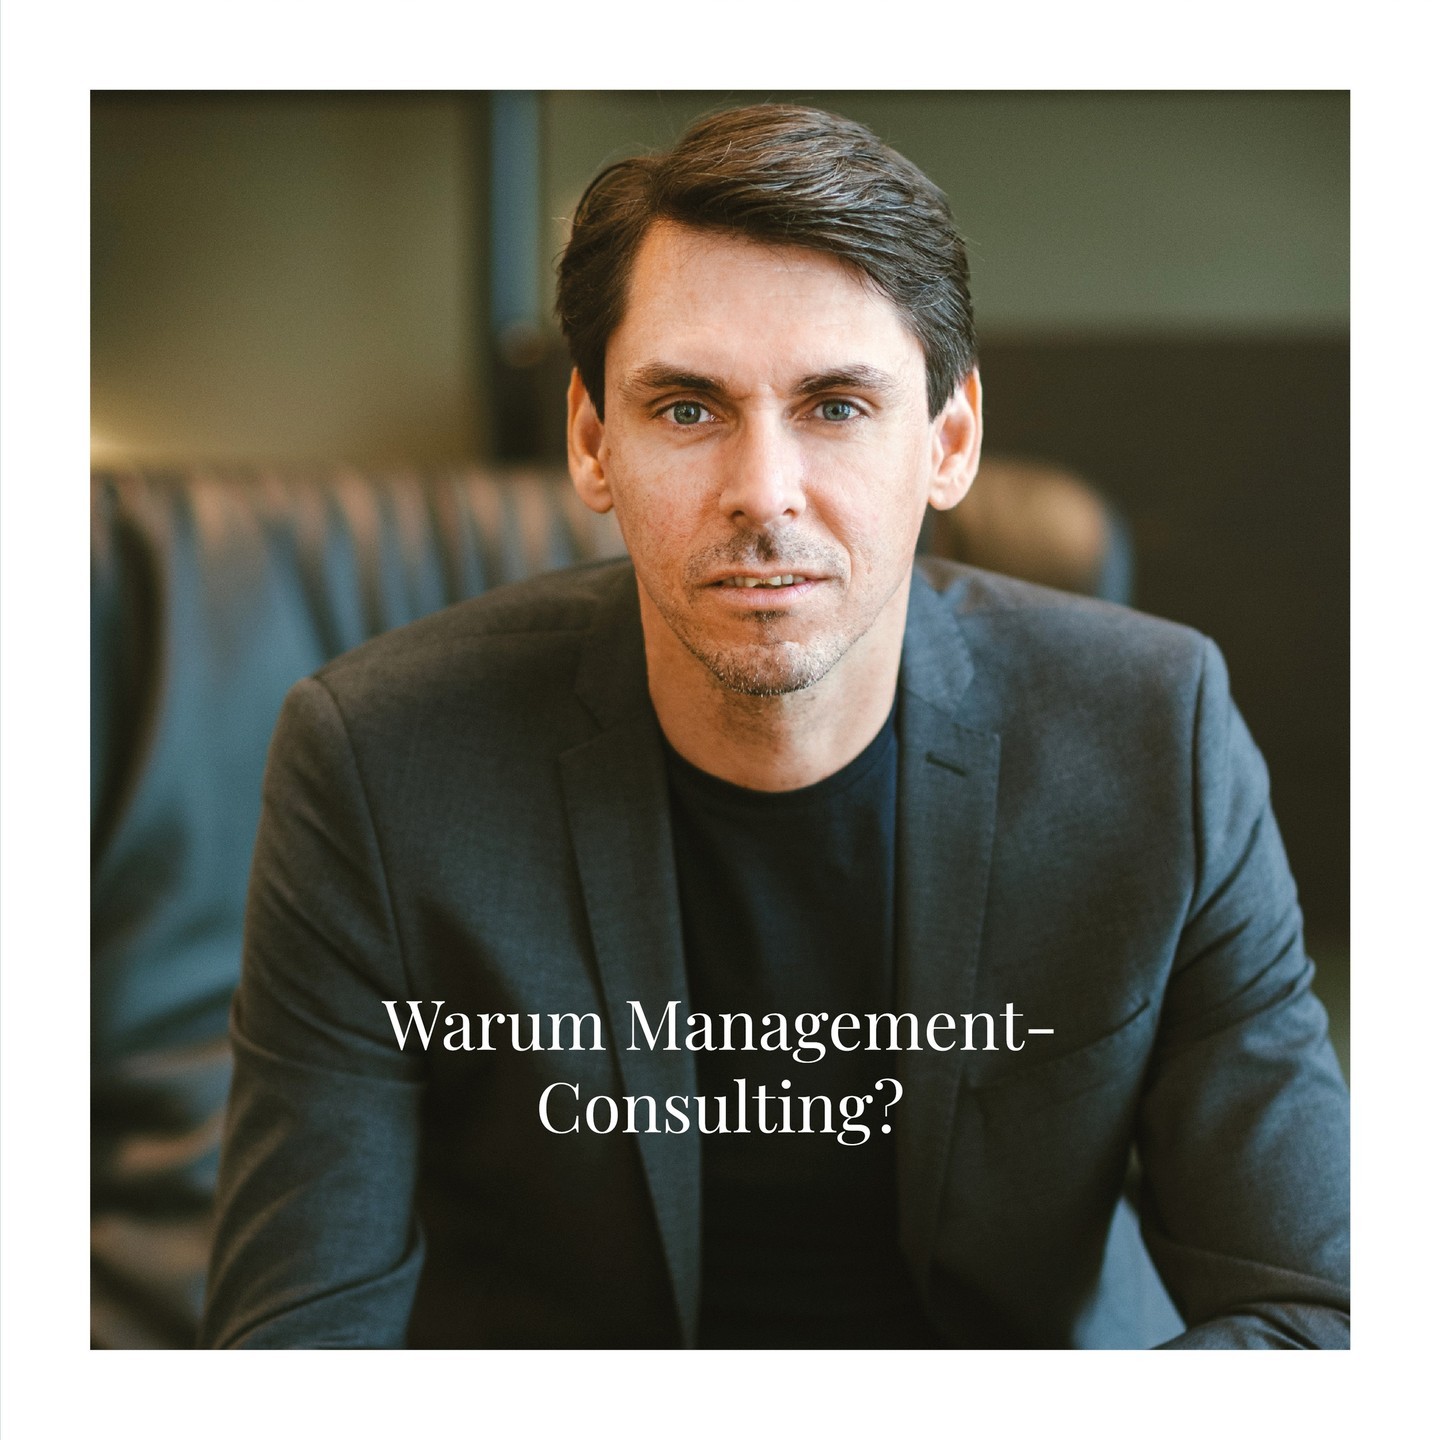 Warum Management-Consulting?